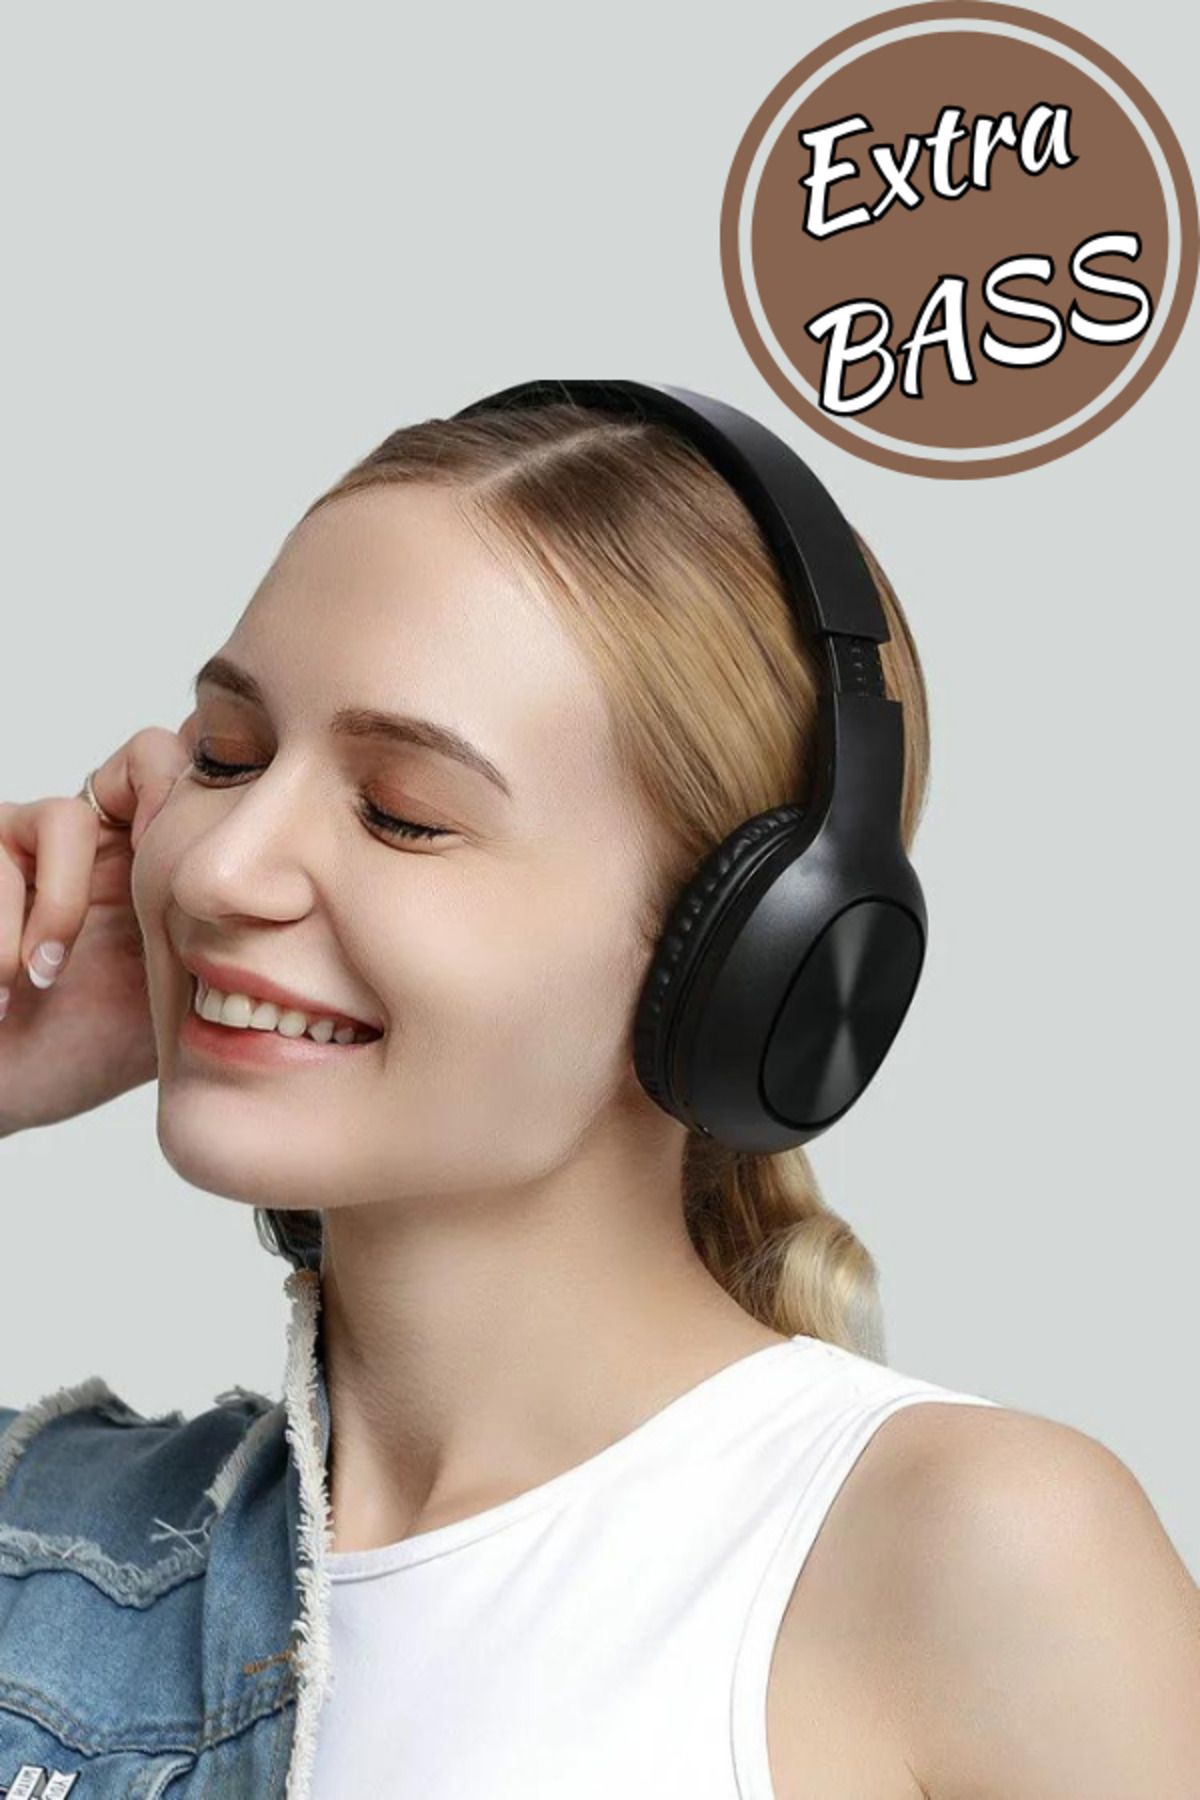 Maybax Kablosuz Bluetooth 5.0 Extra BASS Kulaküstü Radyo FT Kart Aux Destekli Kulaklık Wireless Earphones